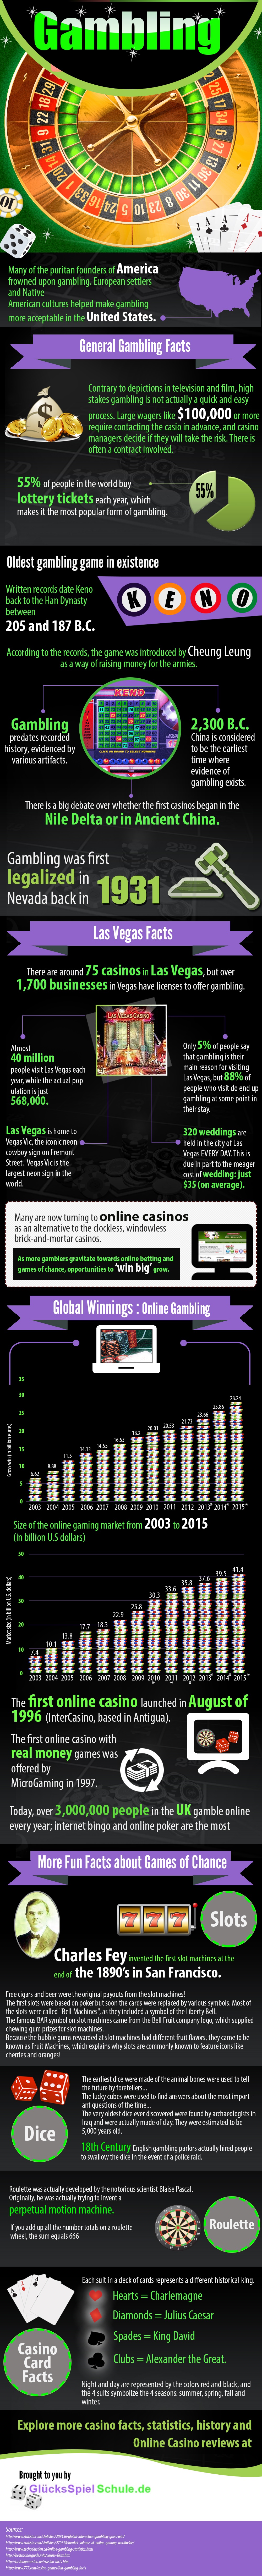 gambling history